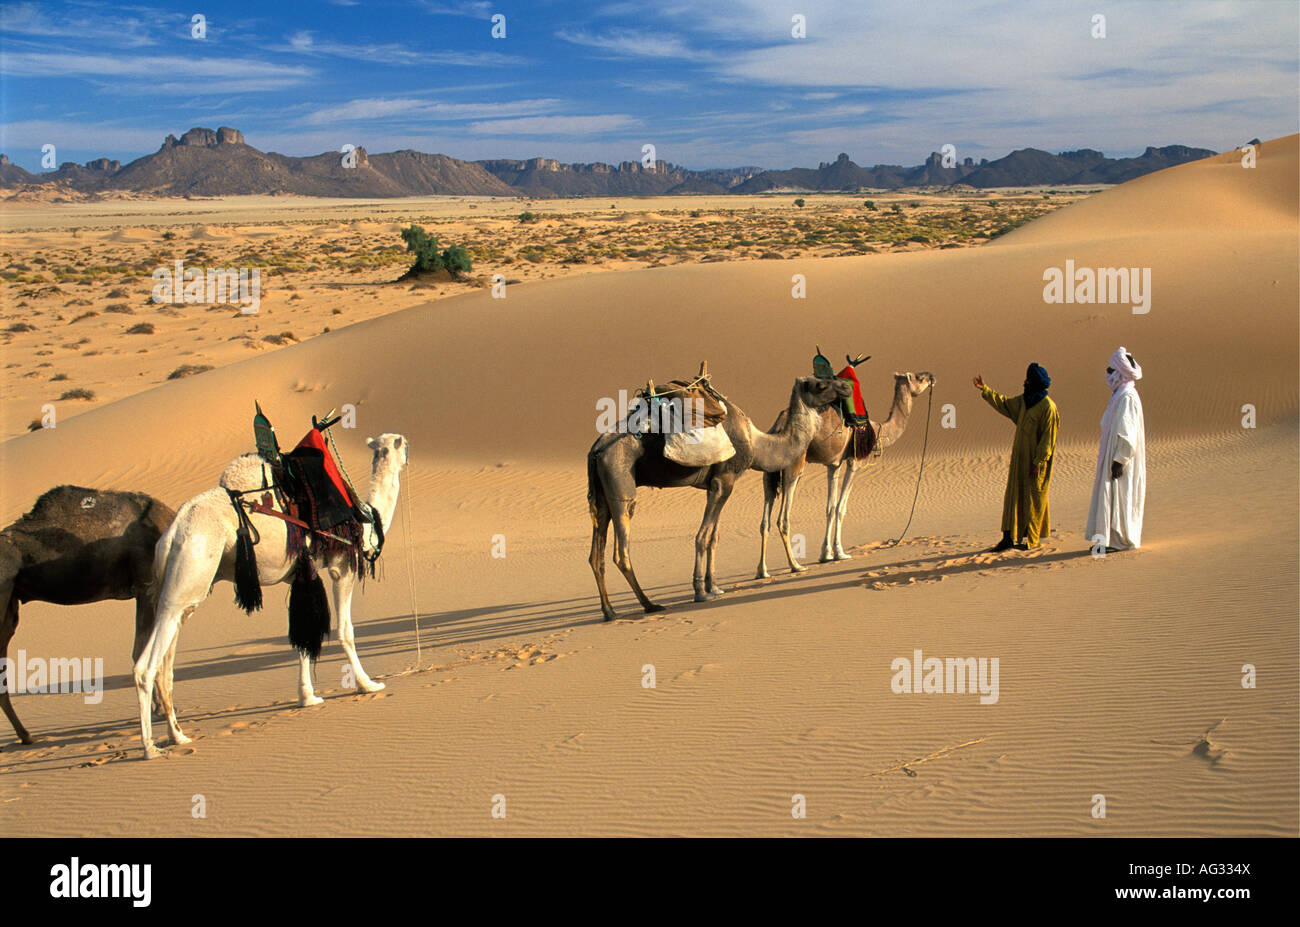 Argelia Djanet hombres de la tribu Tuareg caminando con una caravana de camellos Foto de stock